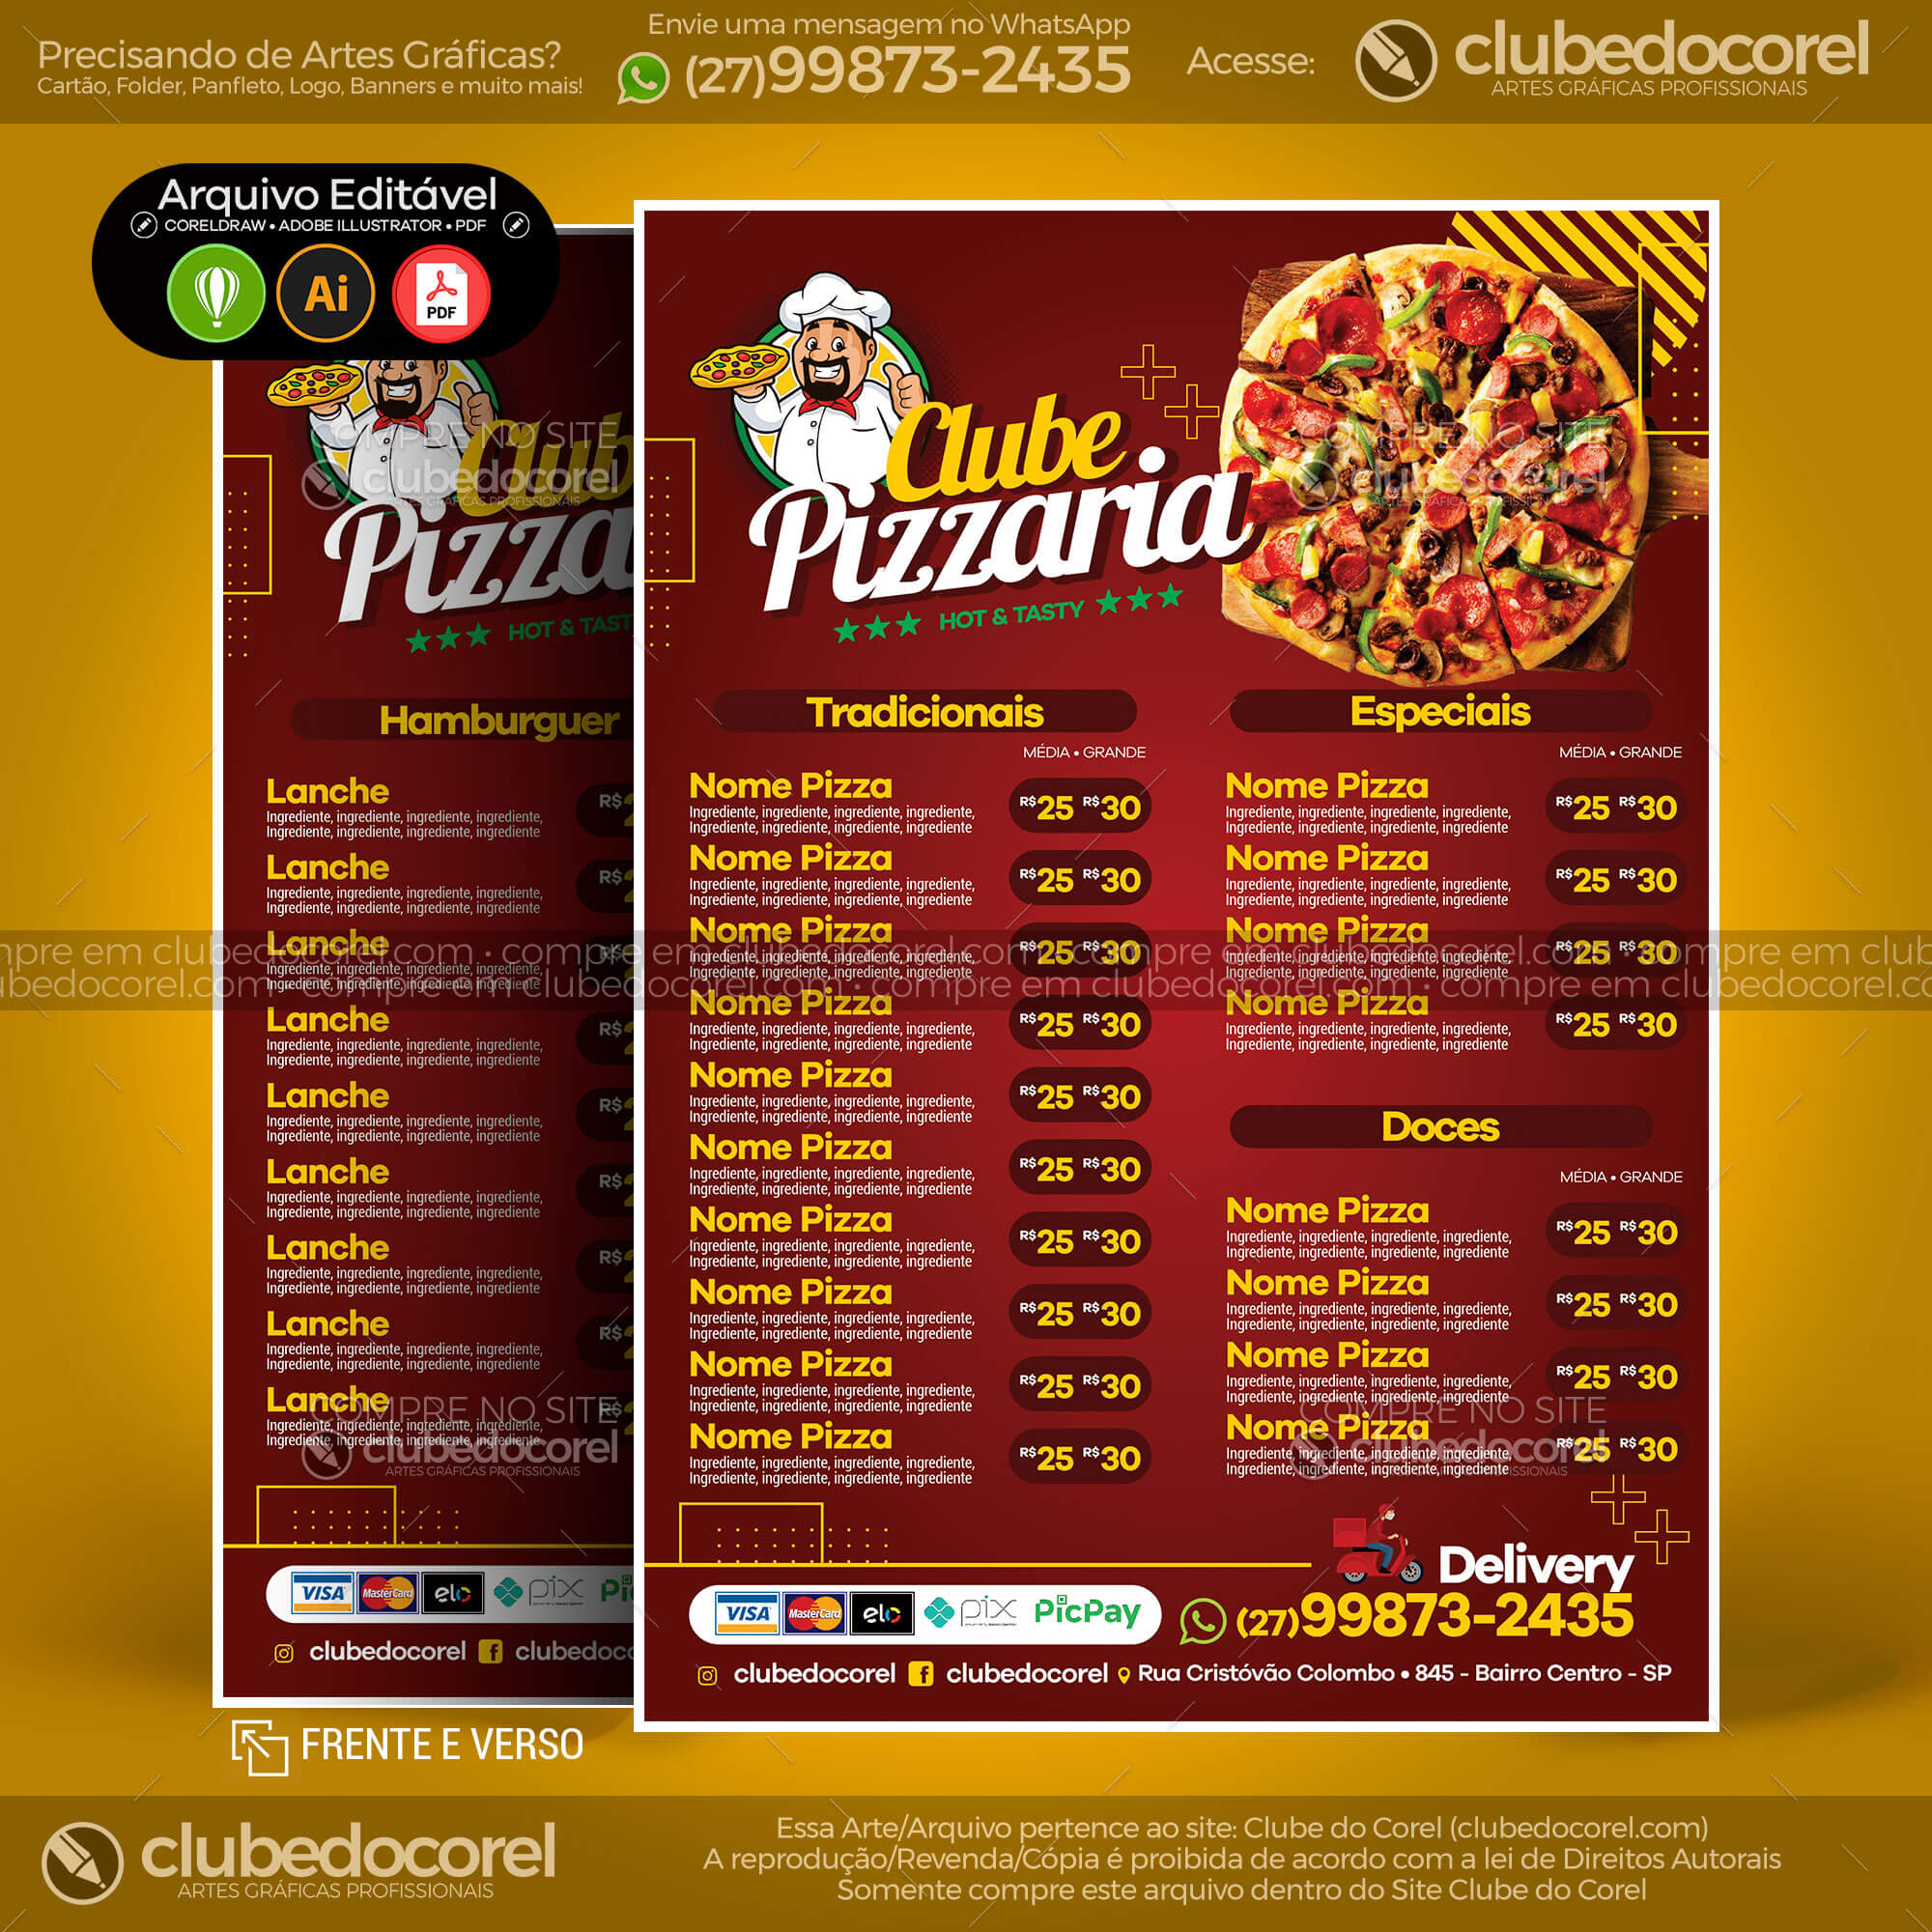 Cardápio Pizzaria #03 - Pizza Moderno [CDR AI PDF] | Clube do Corel - cardapio de pizza